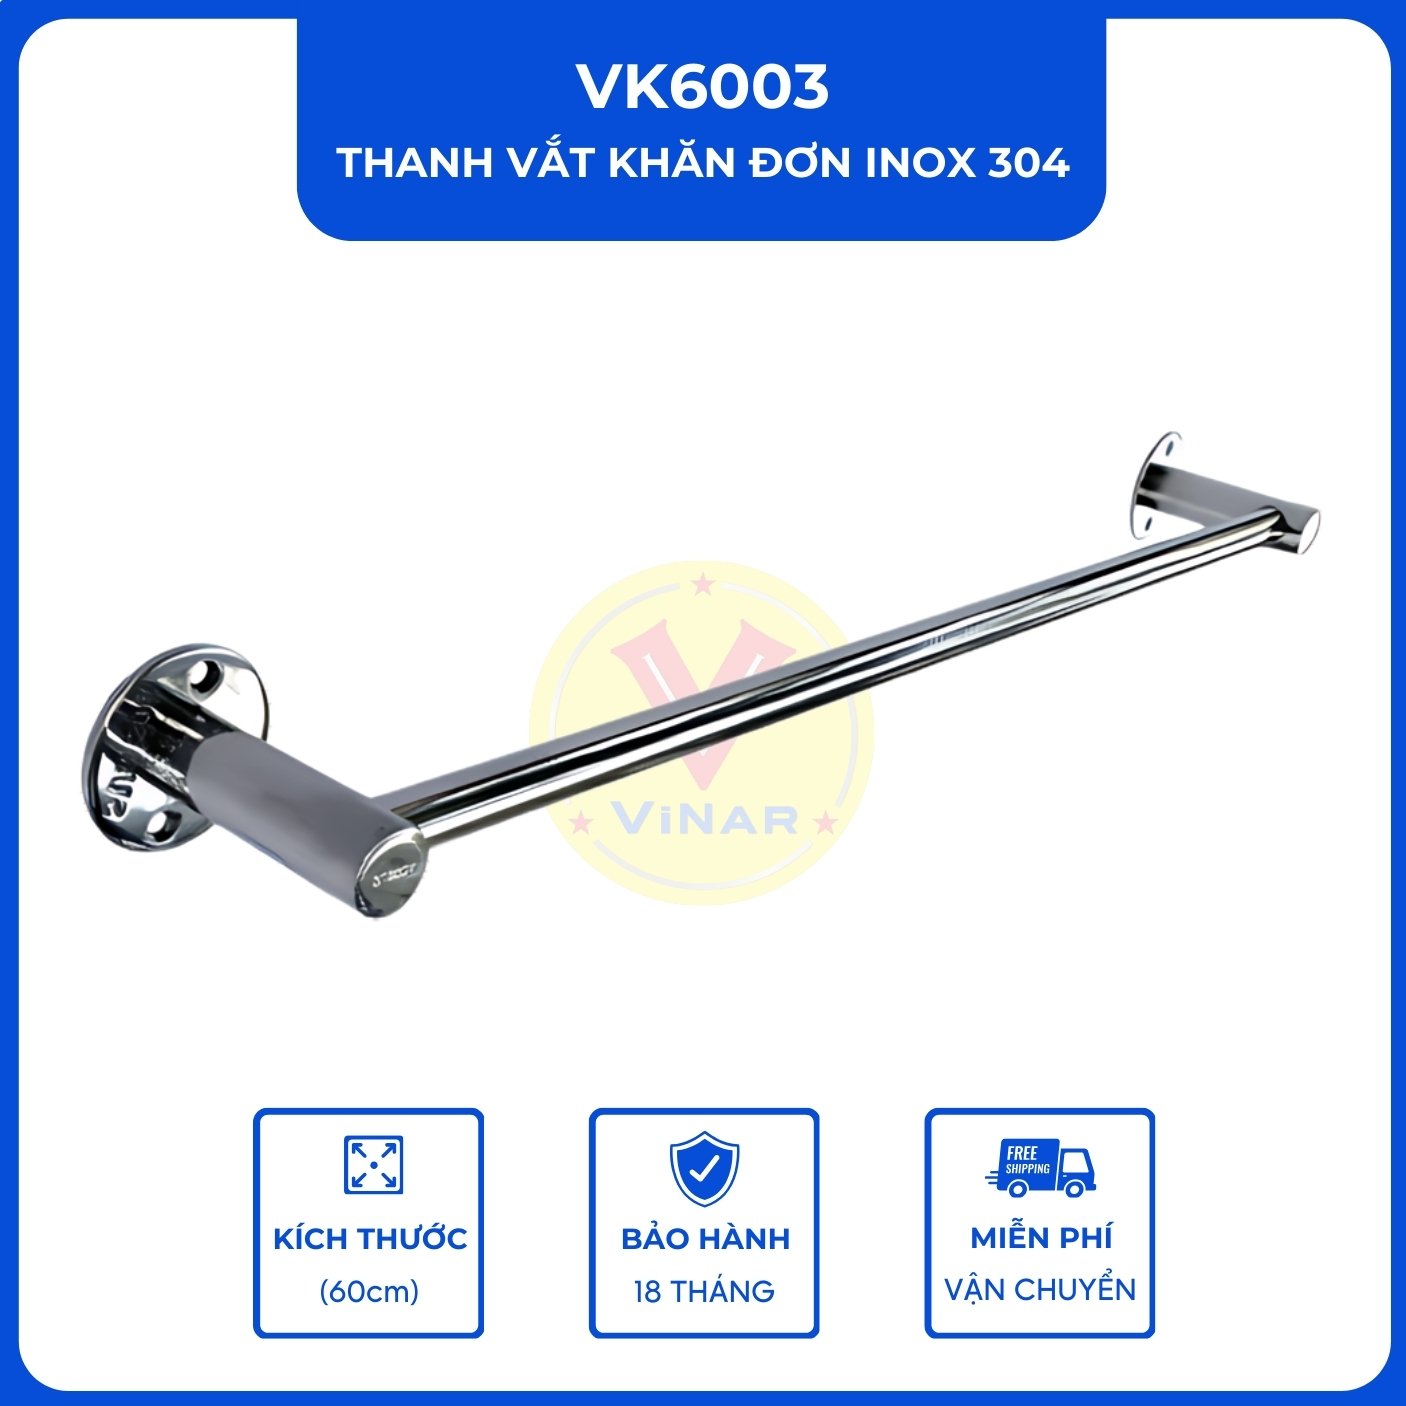 thanh-vat-khan-don-inox-304-VK6003